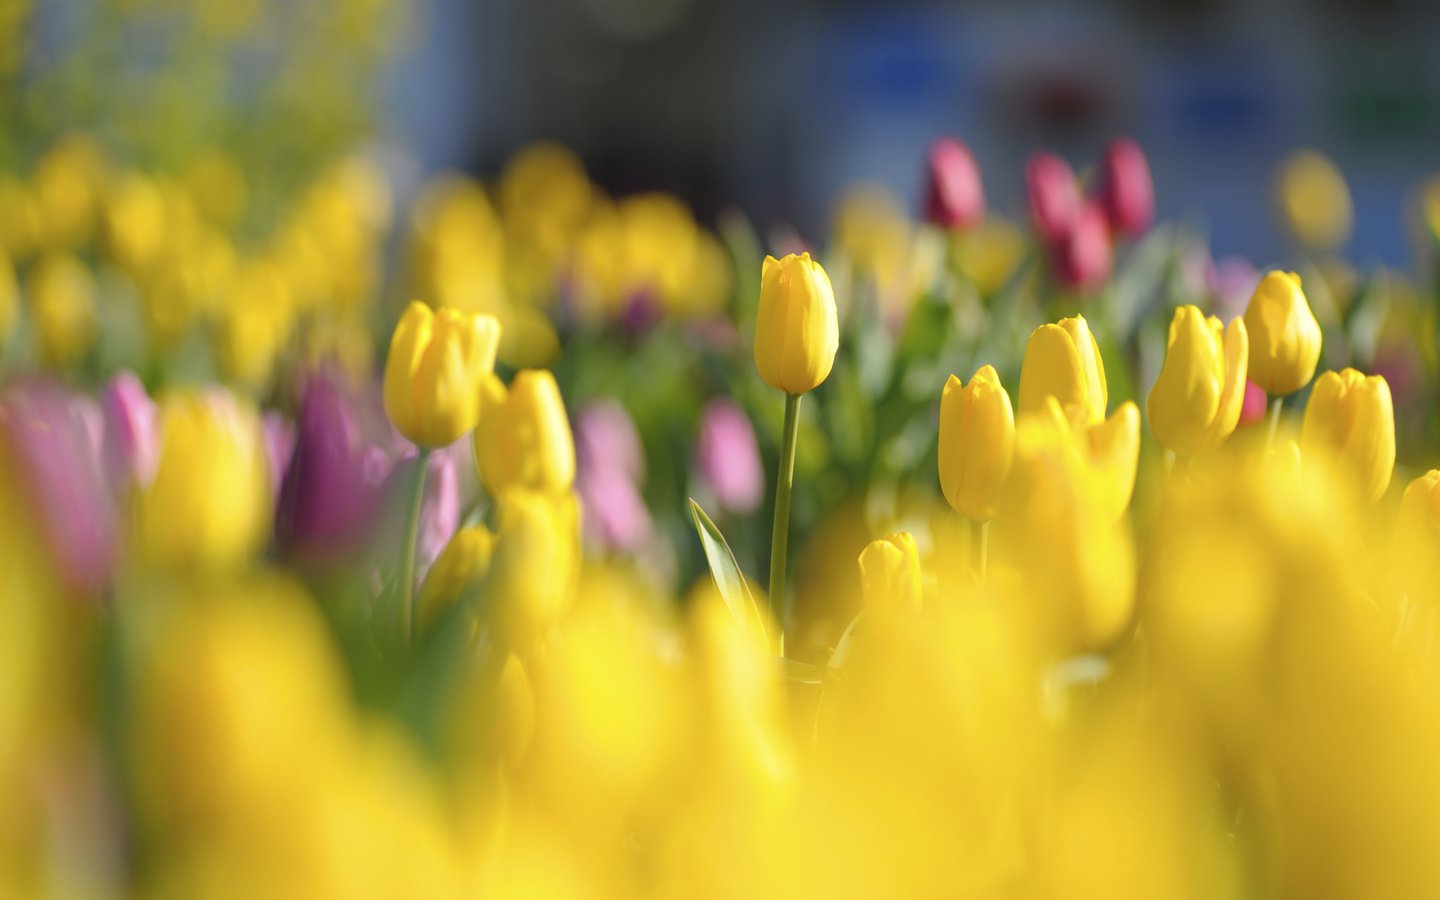 Обои цветы, tyulpany, butony, бутоны, krasnye, yarkie, красные, polya, поляна, тюльпаны, яркие, желтые, cvety, zheltye, flowers, buds, red, glade, tulips, bright, yellow разрешение 2128x1416 Загрузить